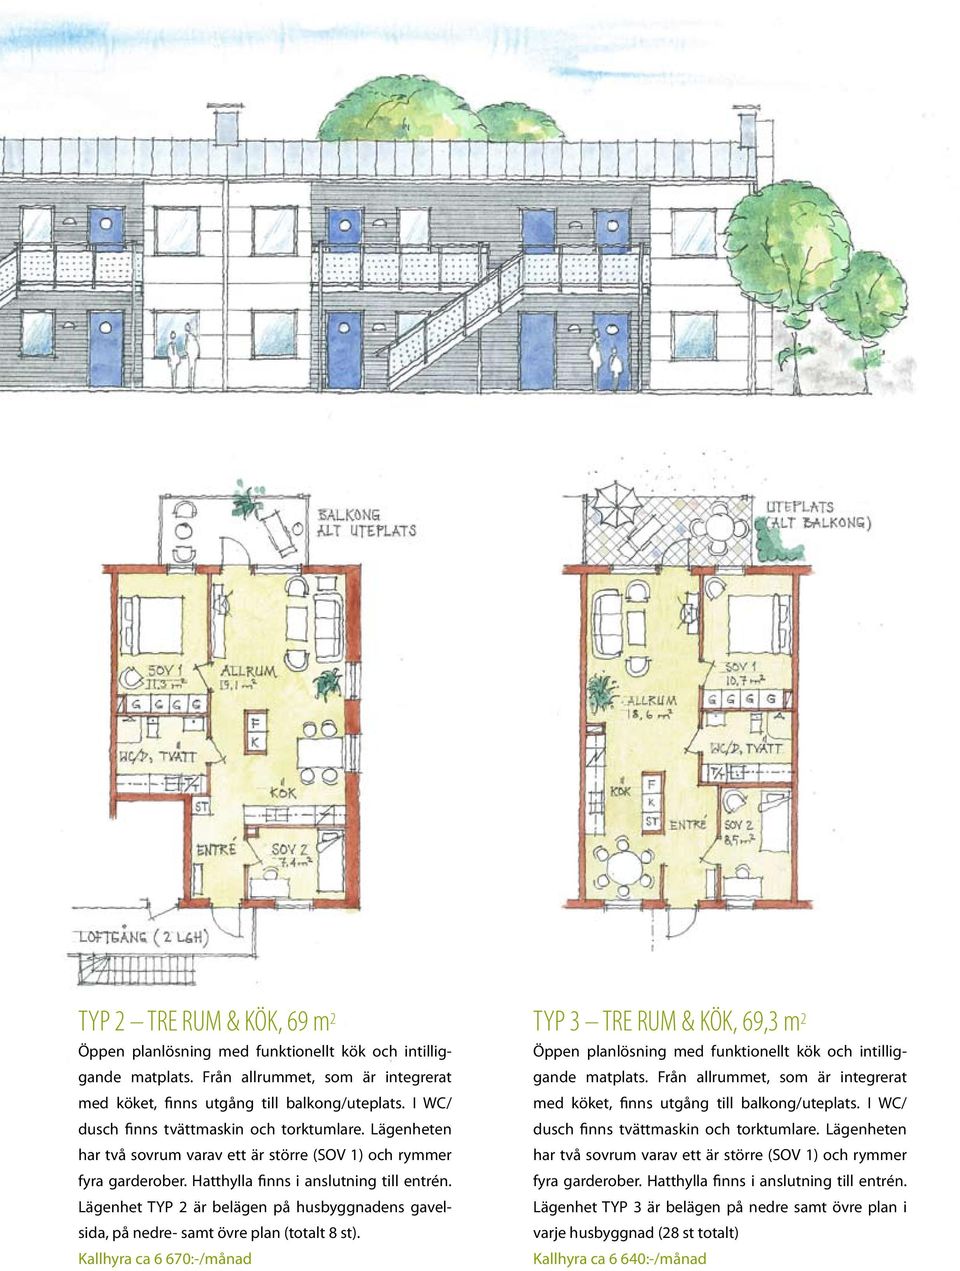 Lägenhet TYP 2 är belägen på husbyggnadens gavelsida, på nedre- samt övre plan (totalt 8 st).